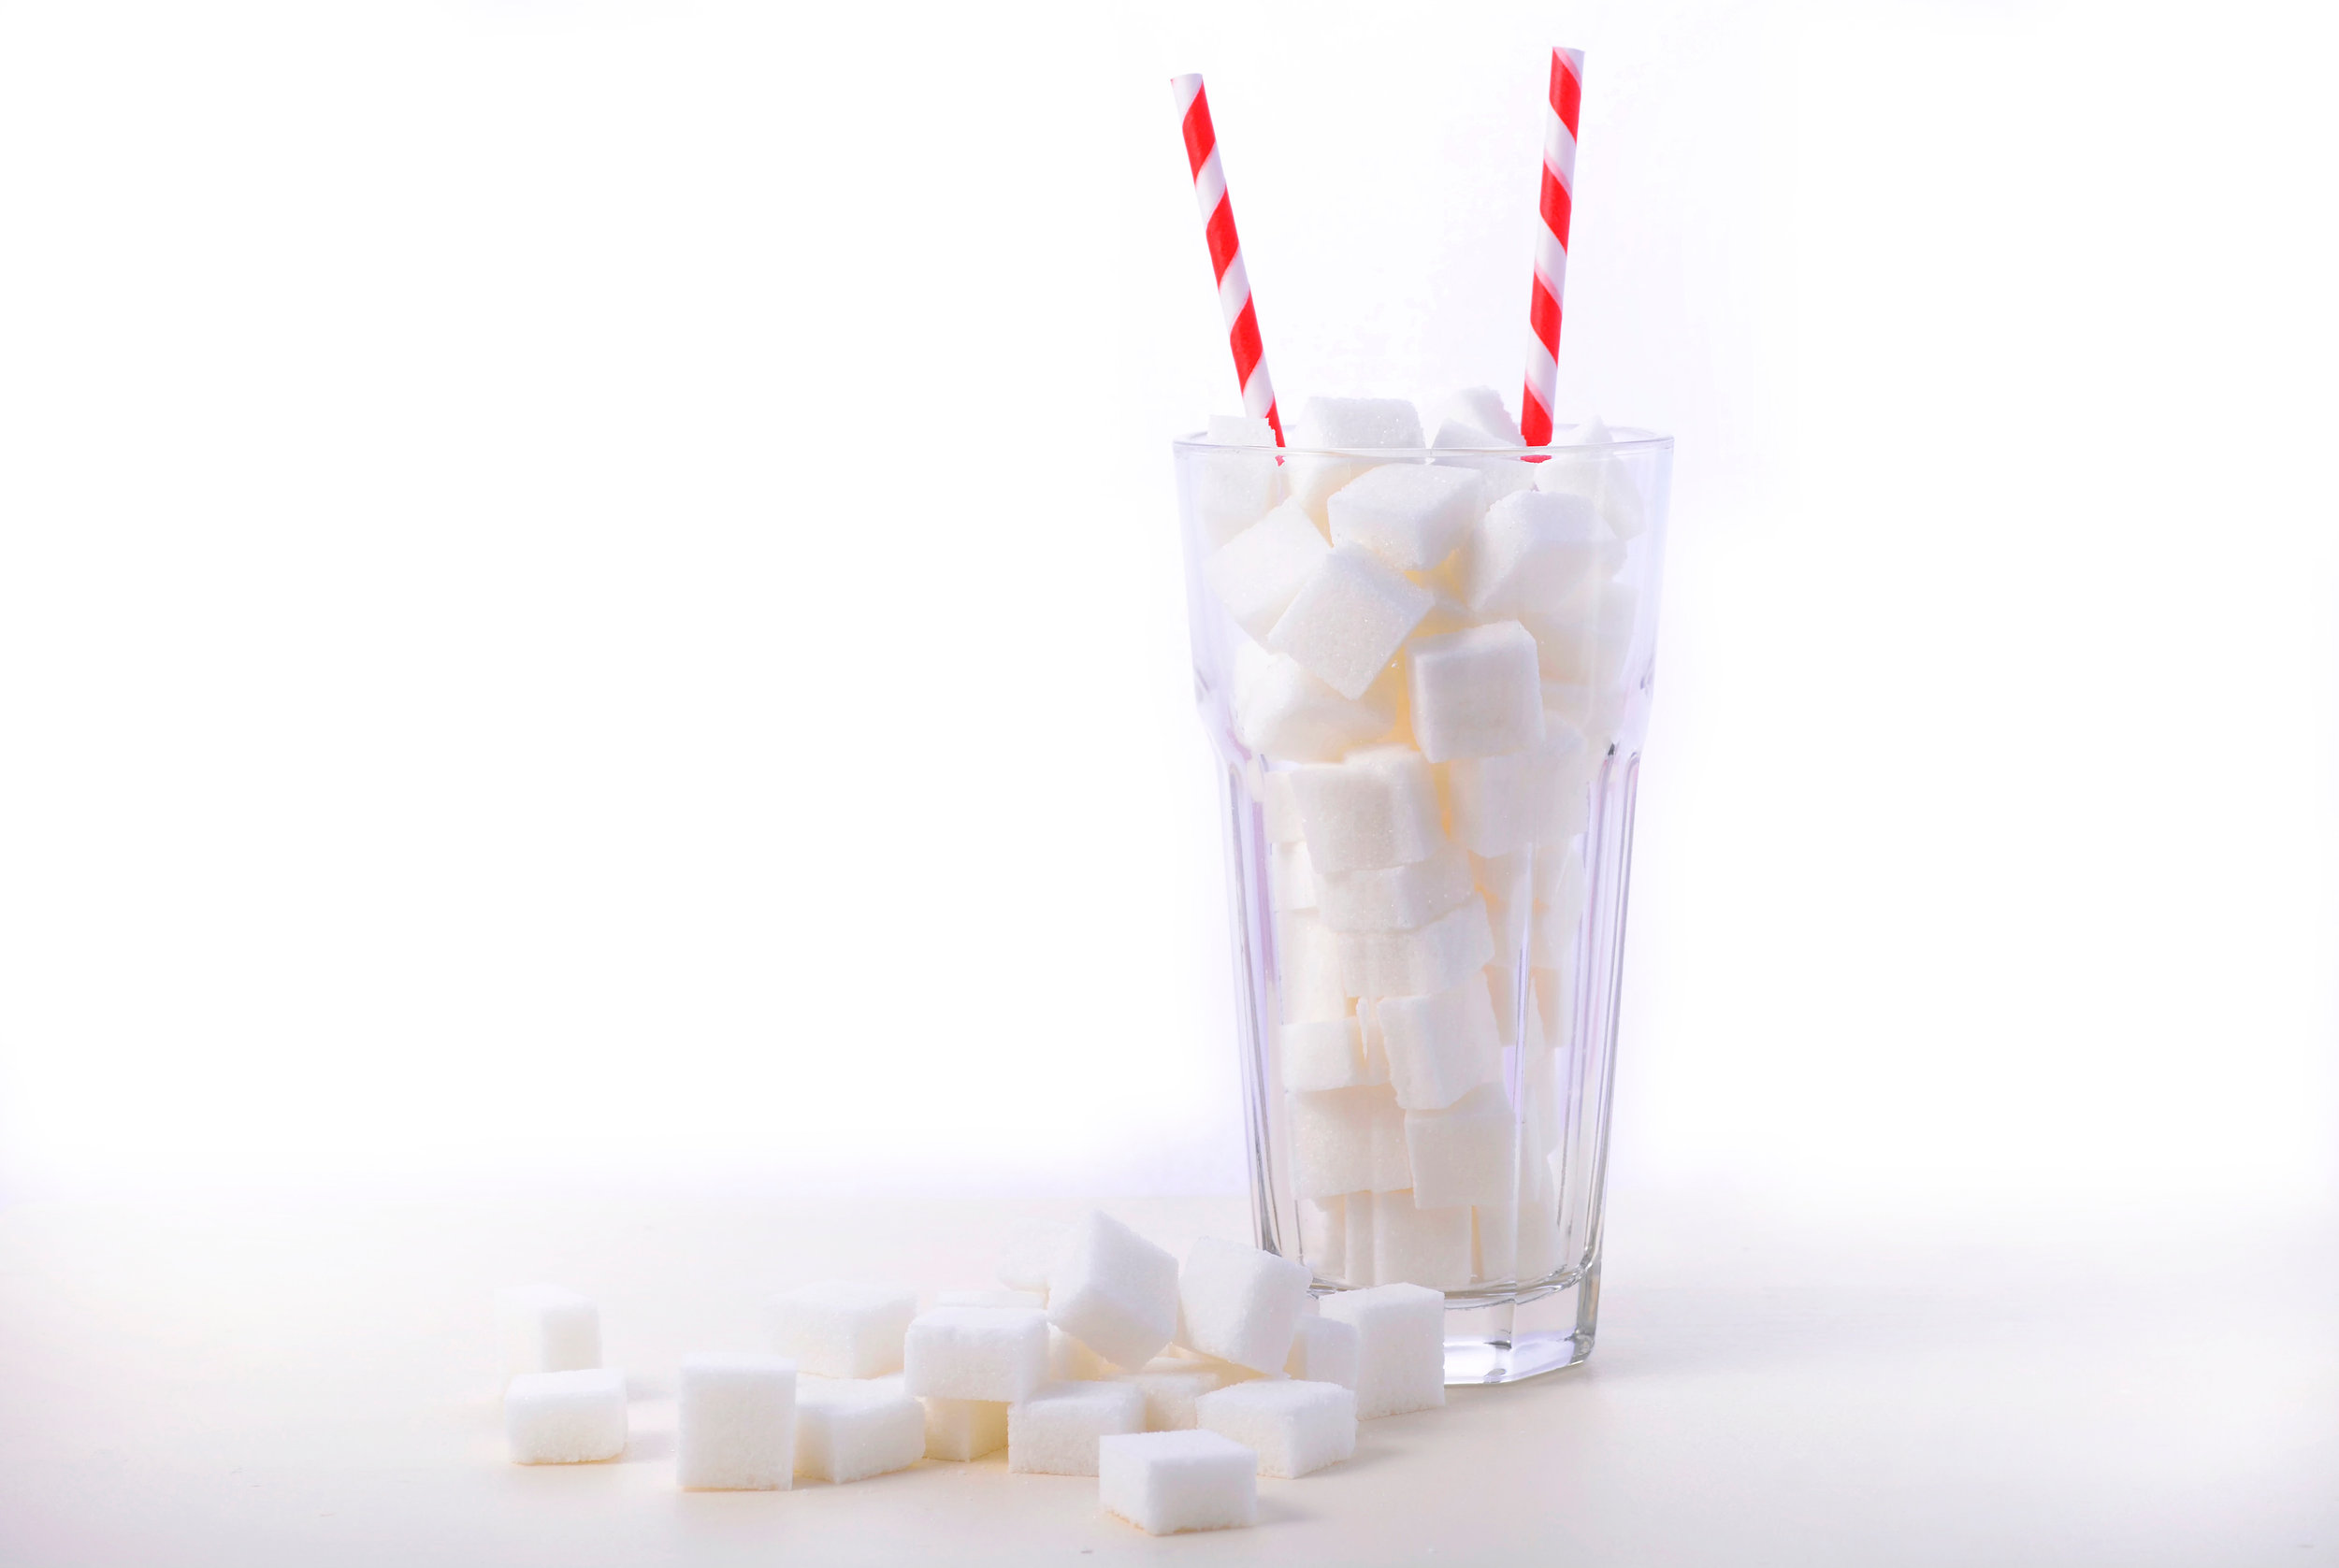 Érdemes tudnod, milyen hatással vannak rád a cukros üdítőitalok